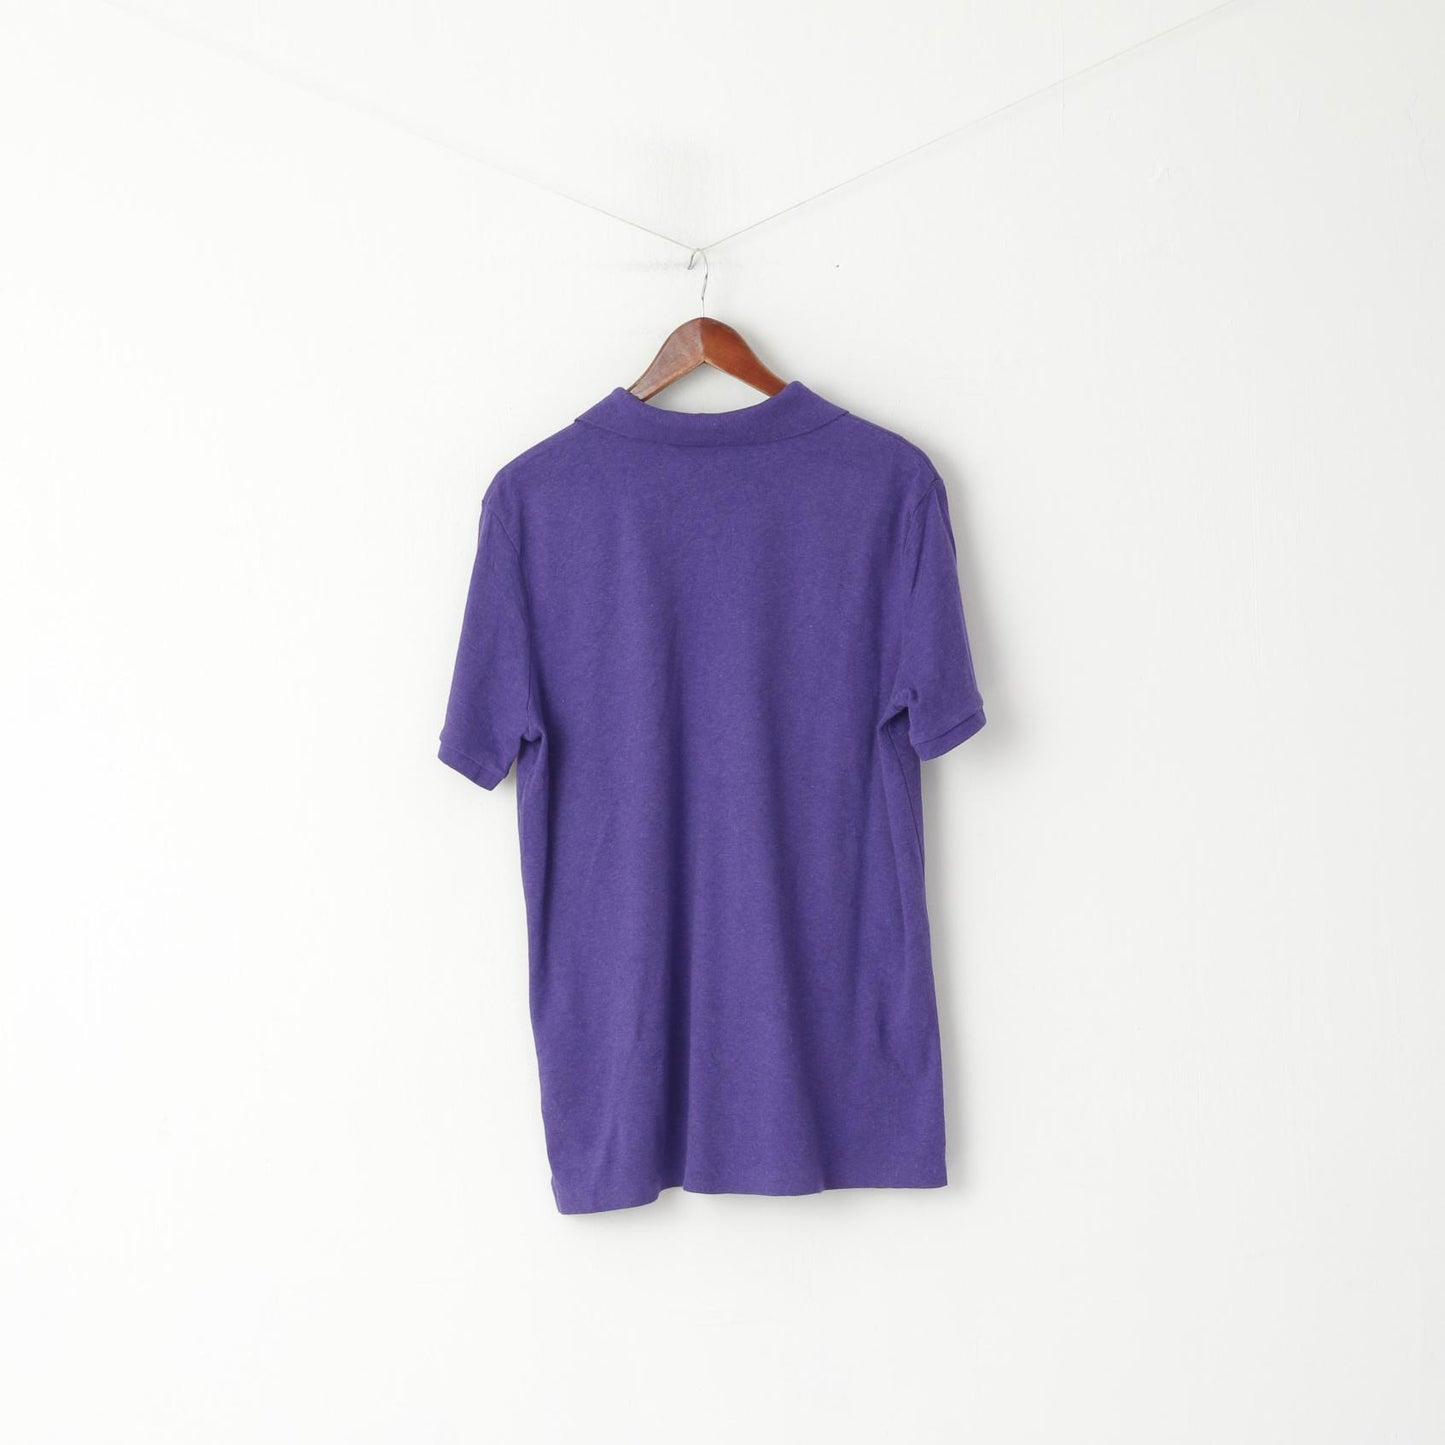 POLO Ralph Lauren Men L Polo Shirt Purple Cotton Stertch Short Sleeve Plain Top